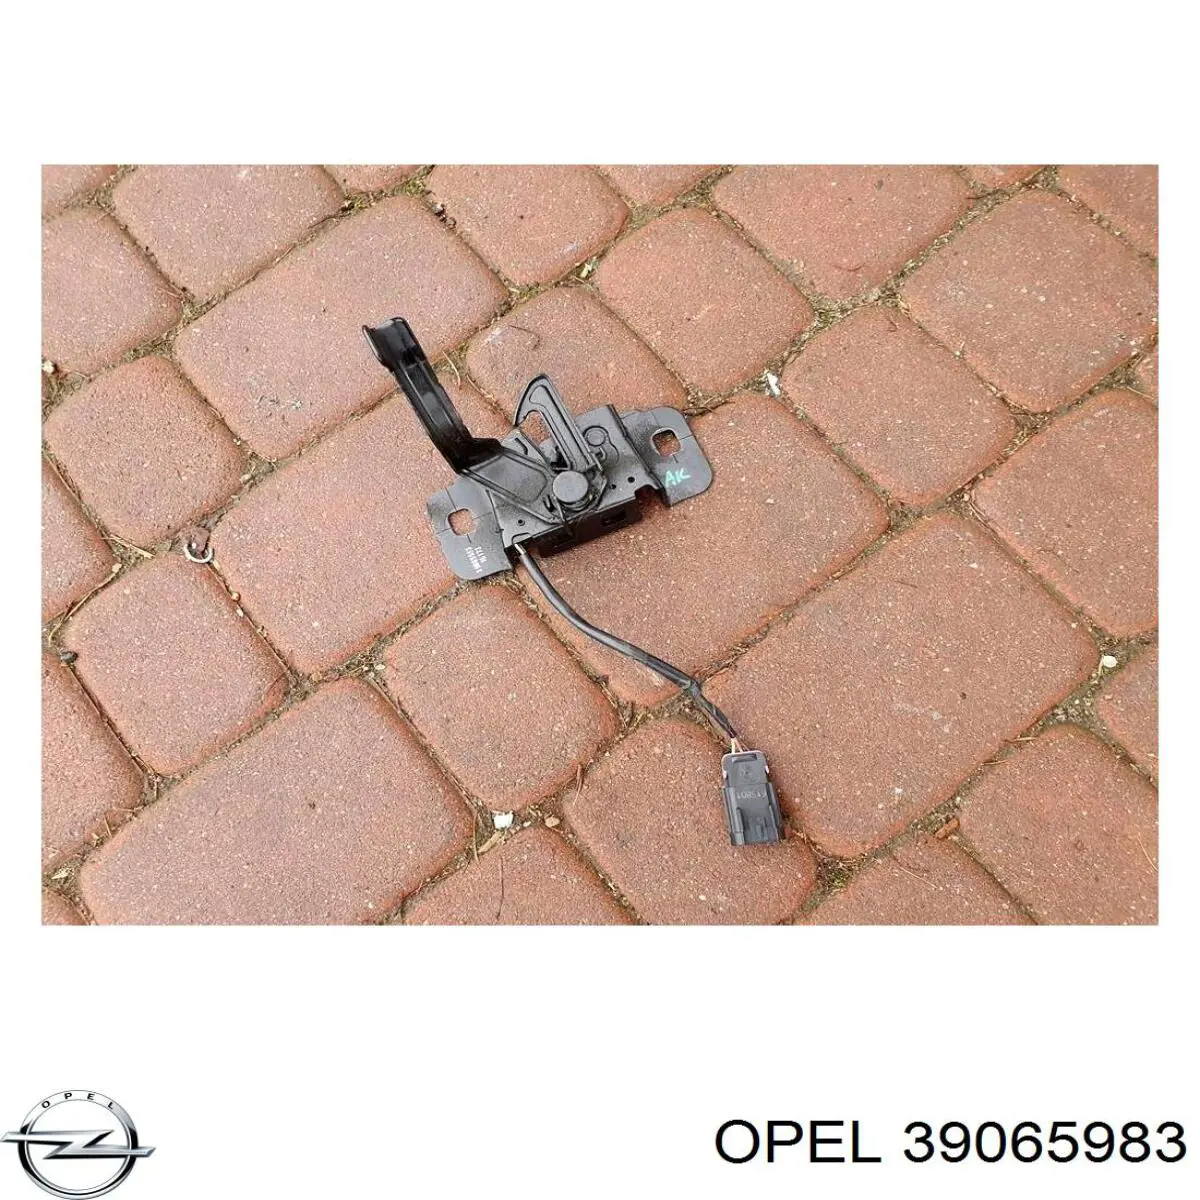 39065983 Opel